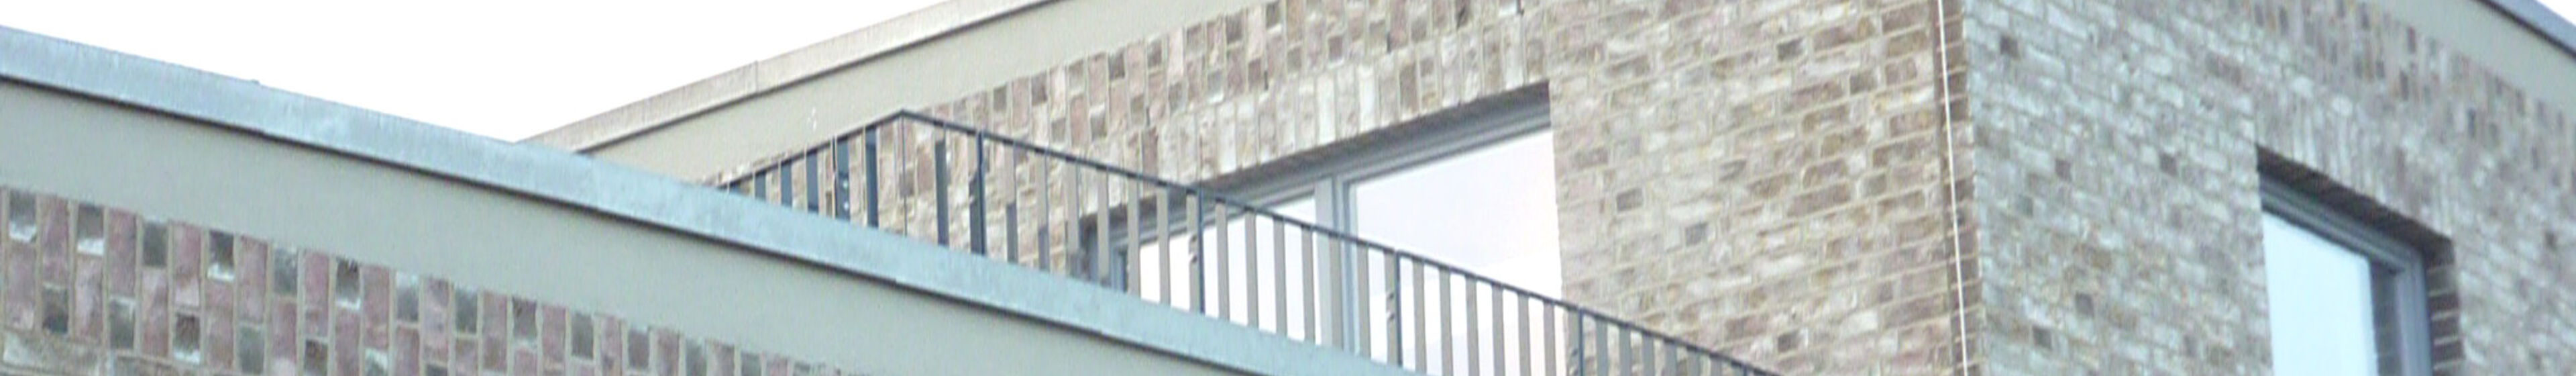 balkon kopfbild